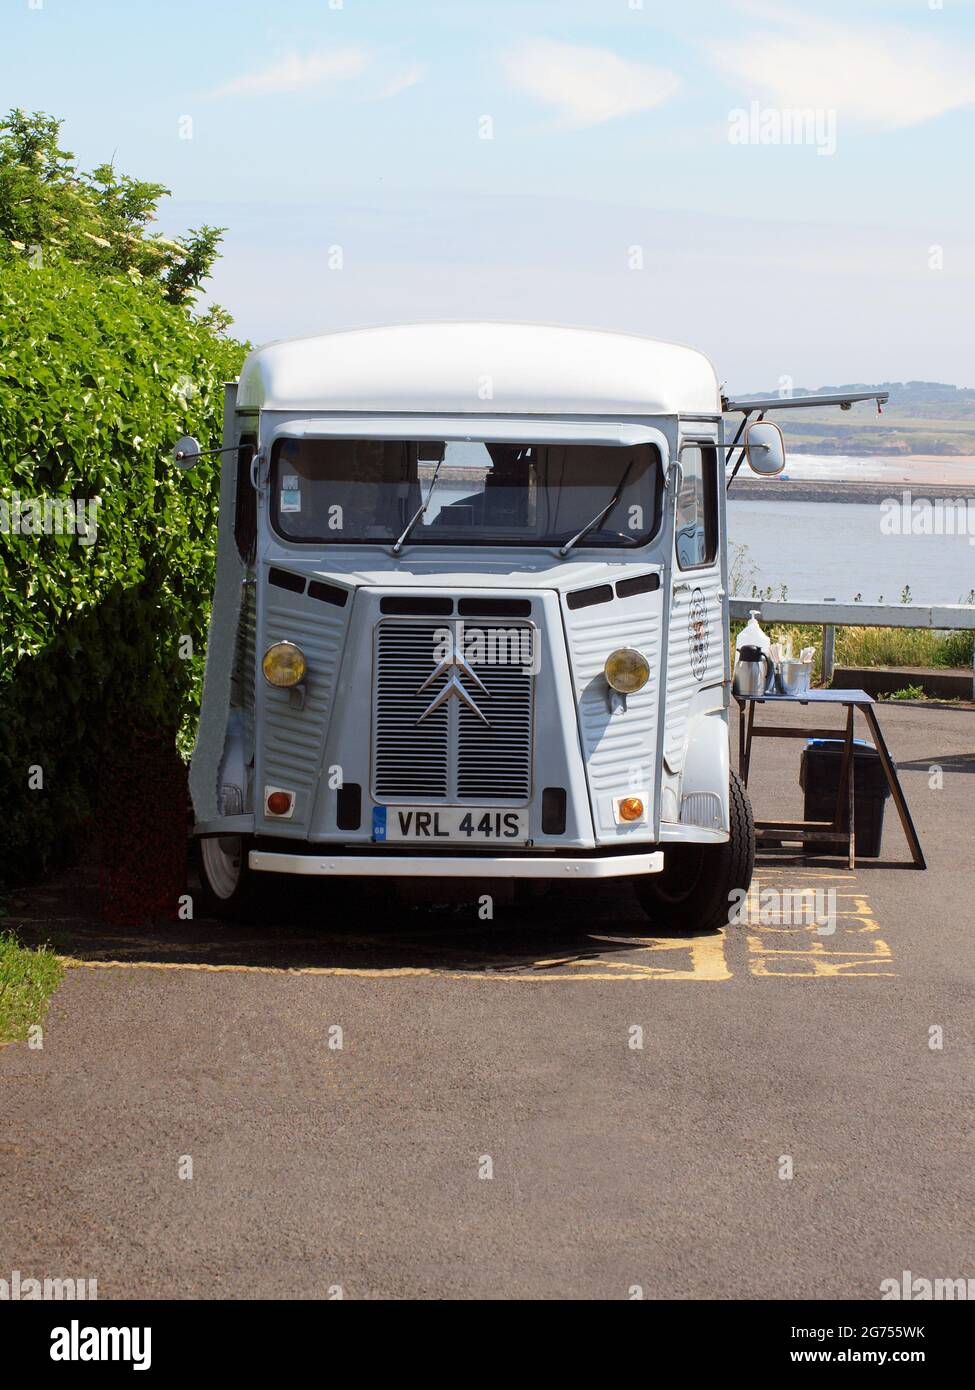 Un minibus commercial léger à quatre portes Citroën H.Y. d'époque qui vend des boissons chaudes et froides à un emplacement en bord de mer de Tynemouth au Royaume-Uni. Banque D'Images